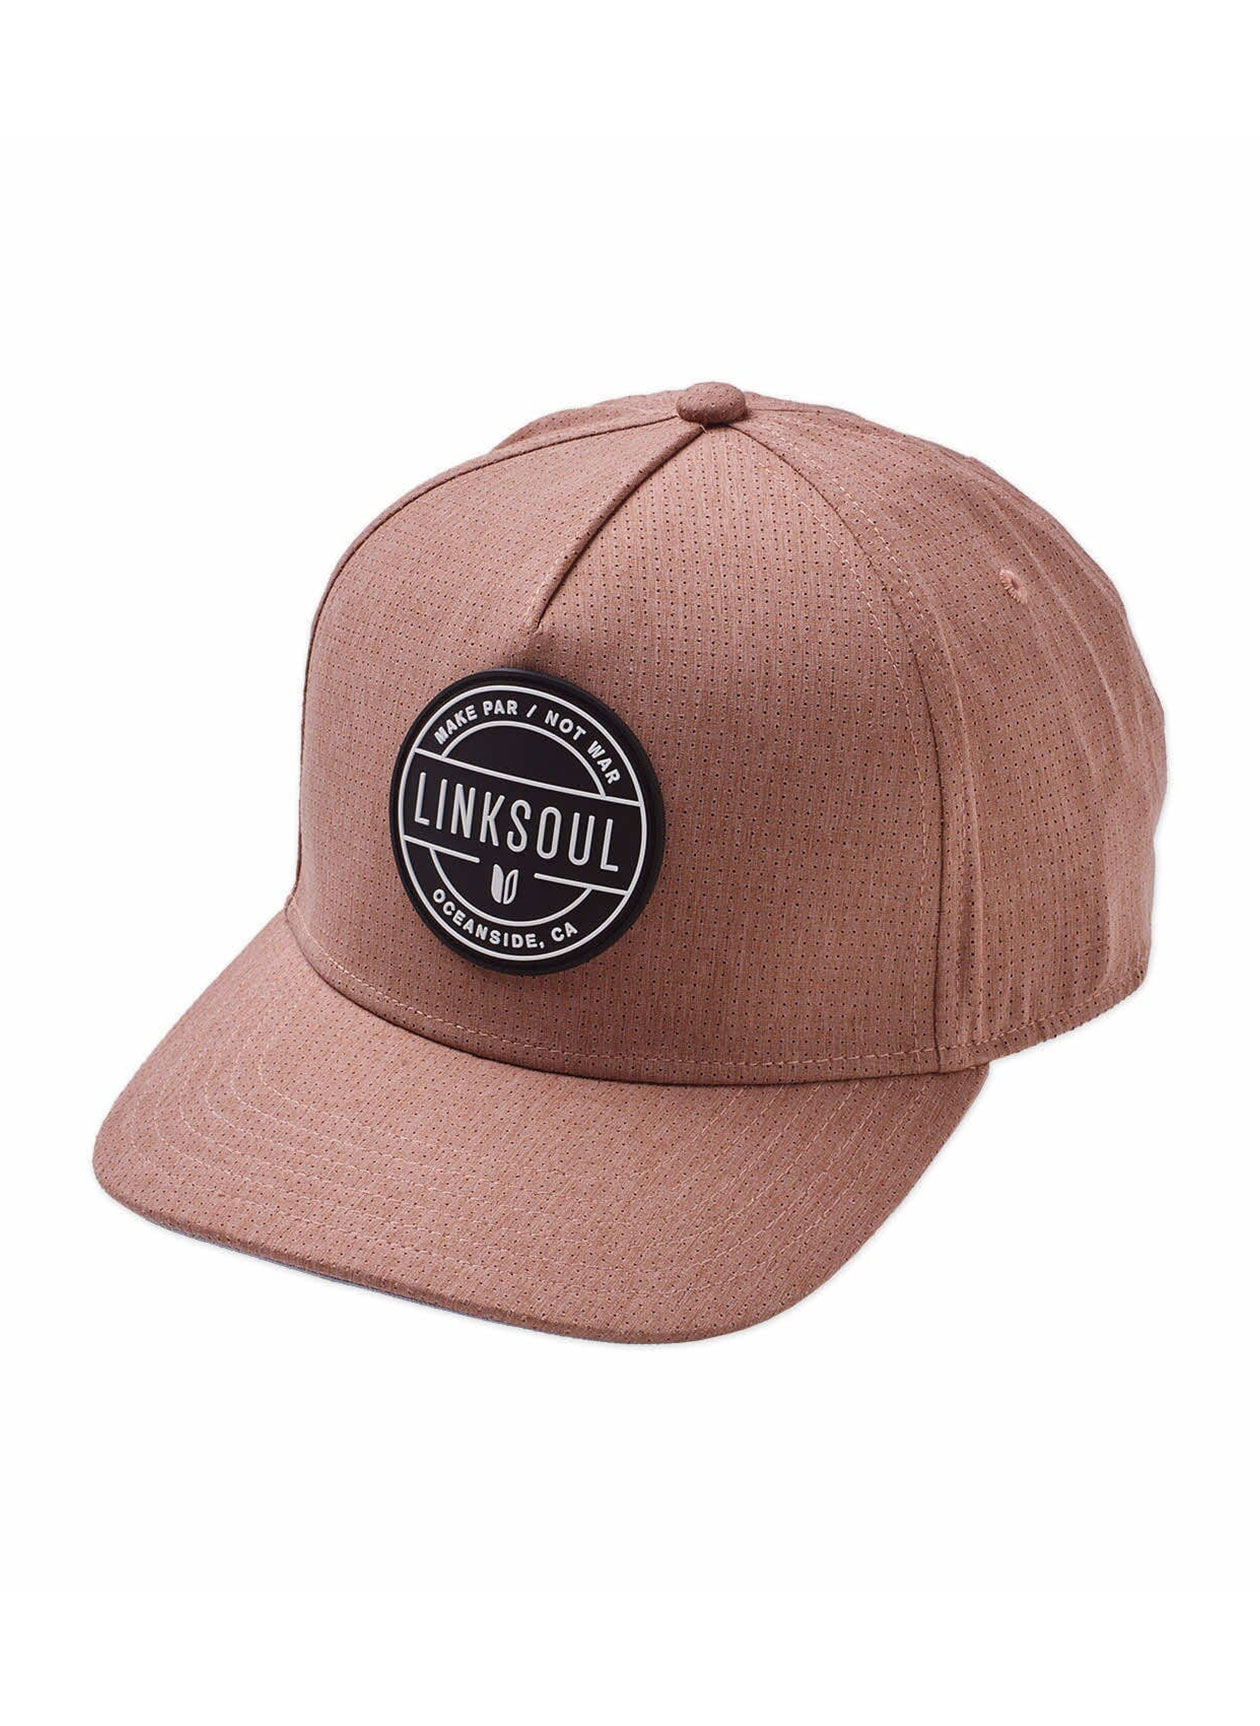 Linksoul Clay/Black/Grey Industrial Patch Boardwalker AC Snapback Hat